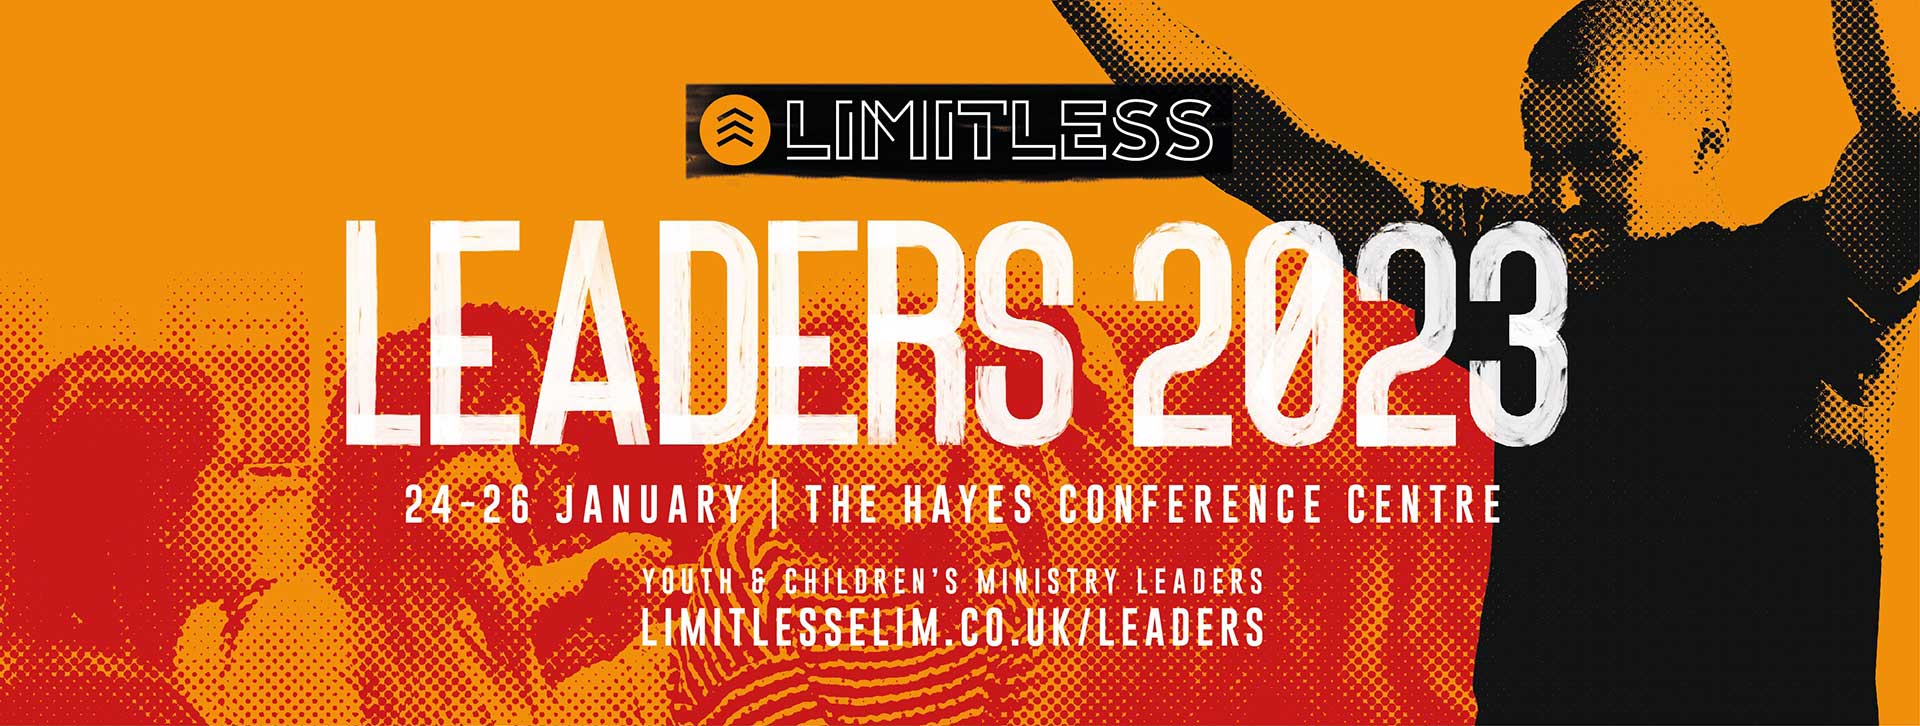 LimitlessLeaders2023banner1920